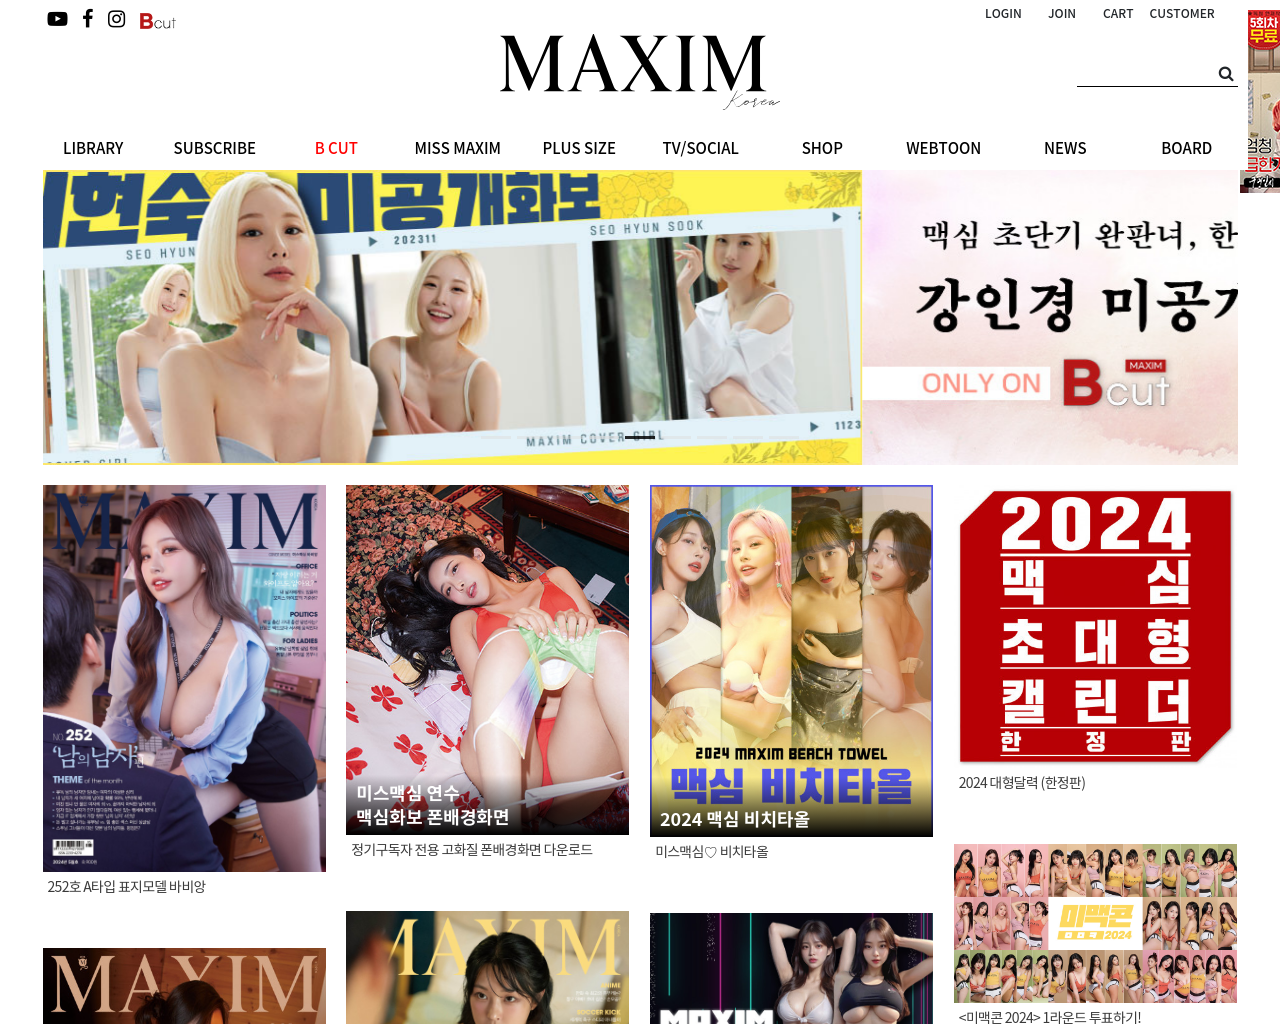 maximkorea.net